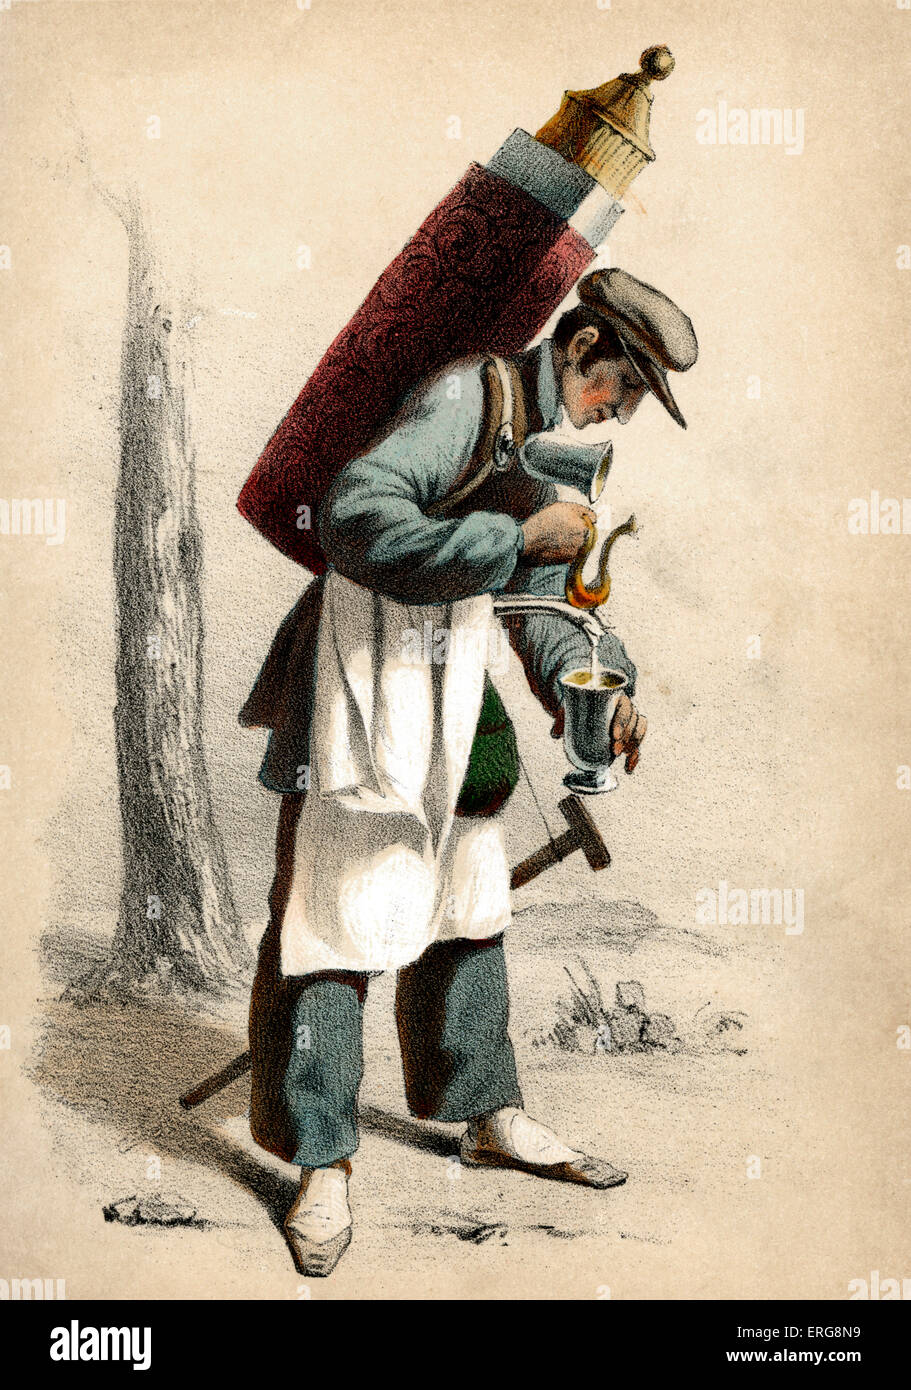 Marchand de Choco: 19. Jahrhundert Französisch Person, die zu Fuß bewegen würde verkaufen heißen Schokolade aus einem tragbaren Behälter. Stockfoto